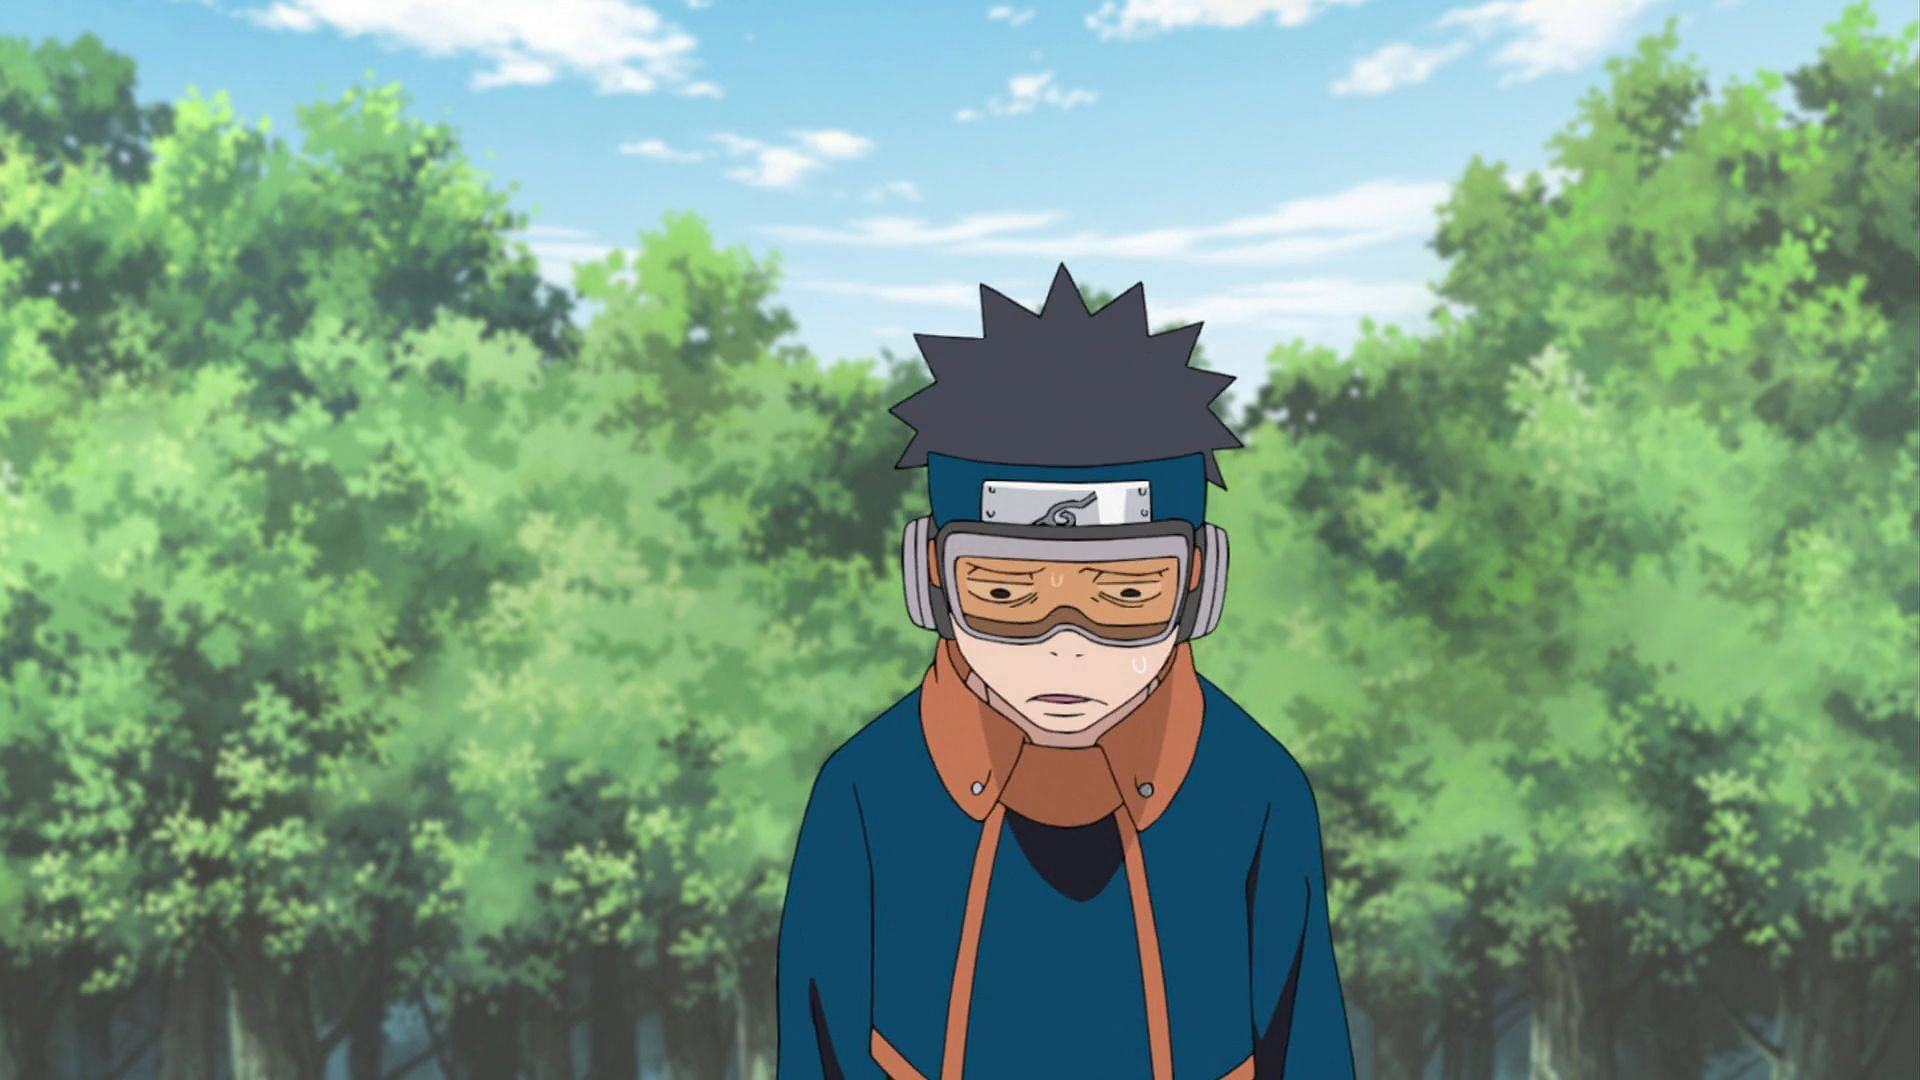 Obito used to be like Naruto (Image via Masashi Kishimoto/Shueisha, Viz Media, Naruto Shippuden)